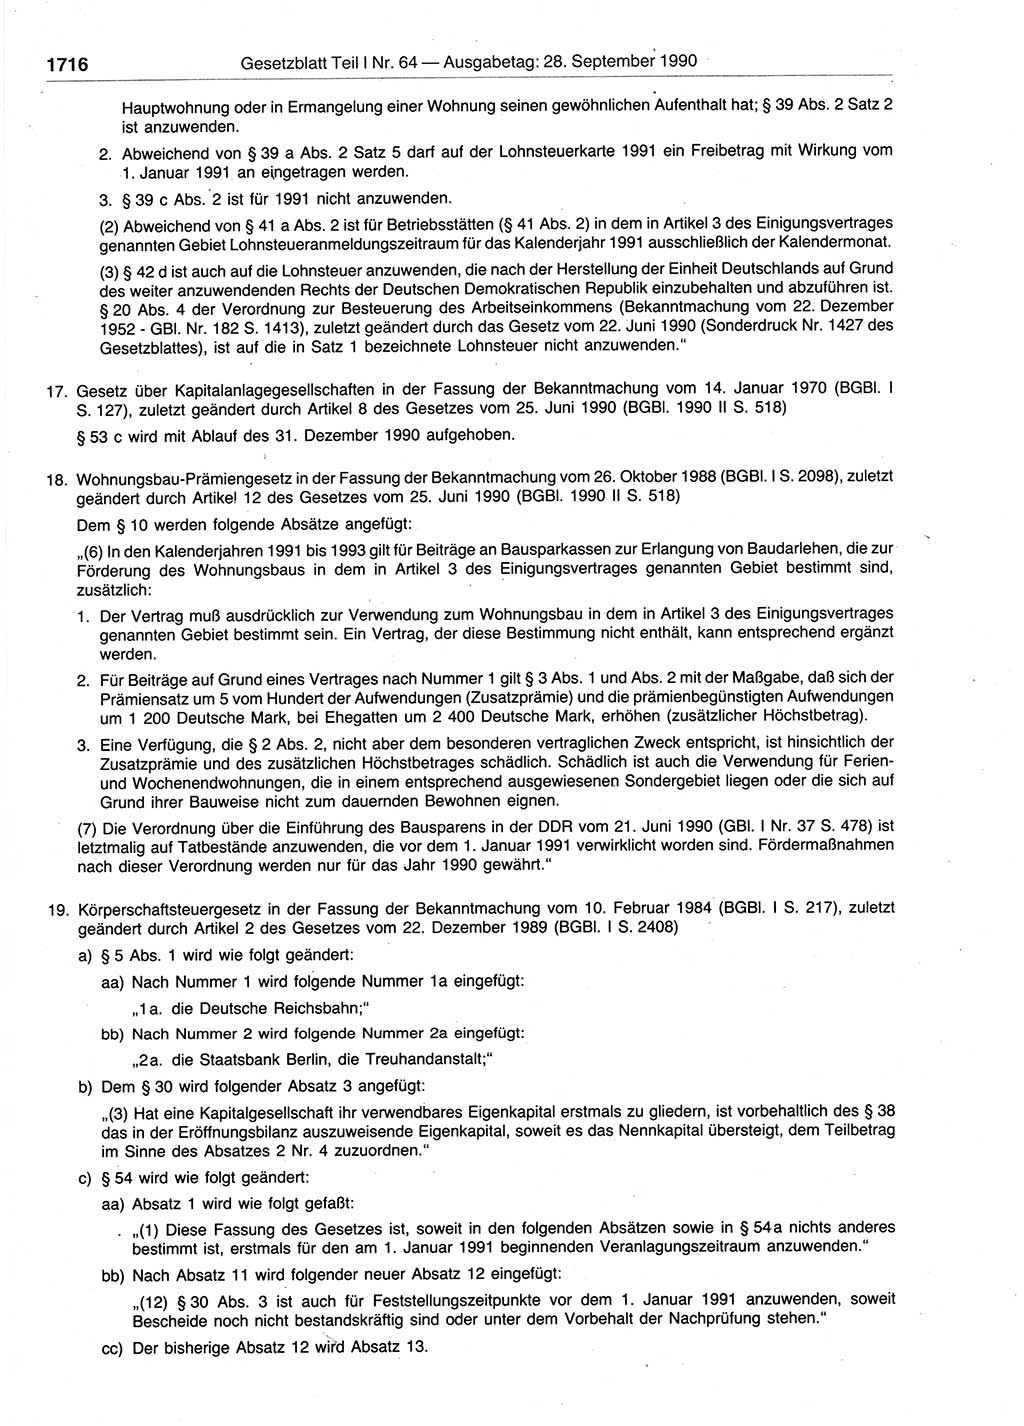 Gesetzblatt (GBl.) der Deutschen Demokratischen Republik (DDR) Teil Ⅰ 1990, Seite 1716 (GBl. DDR Ⅰ 1990, S. 1716)